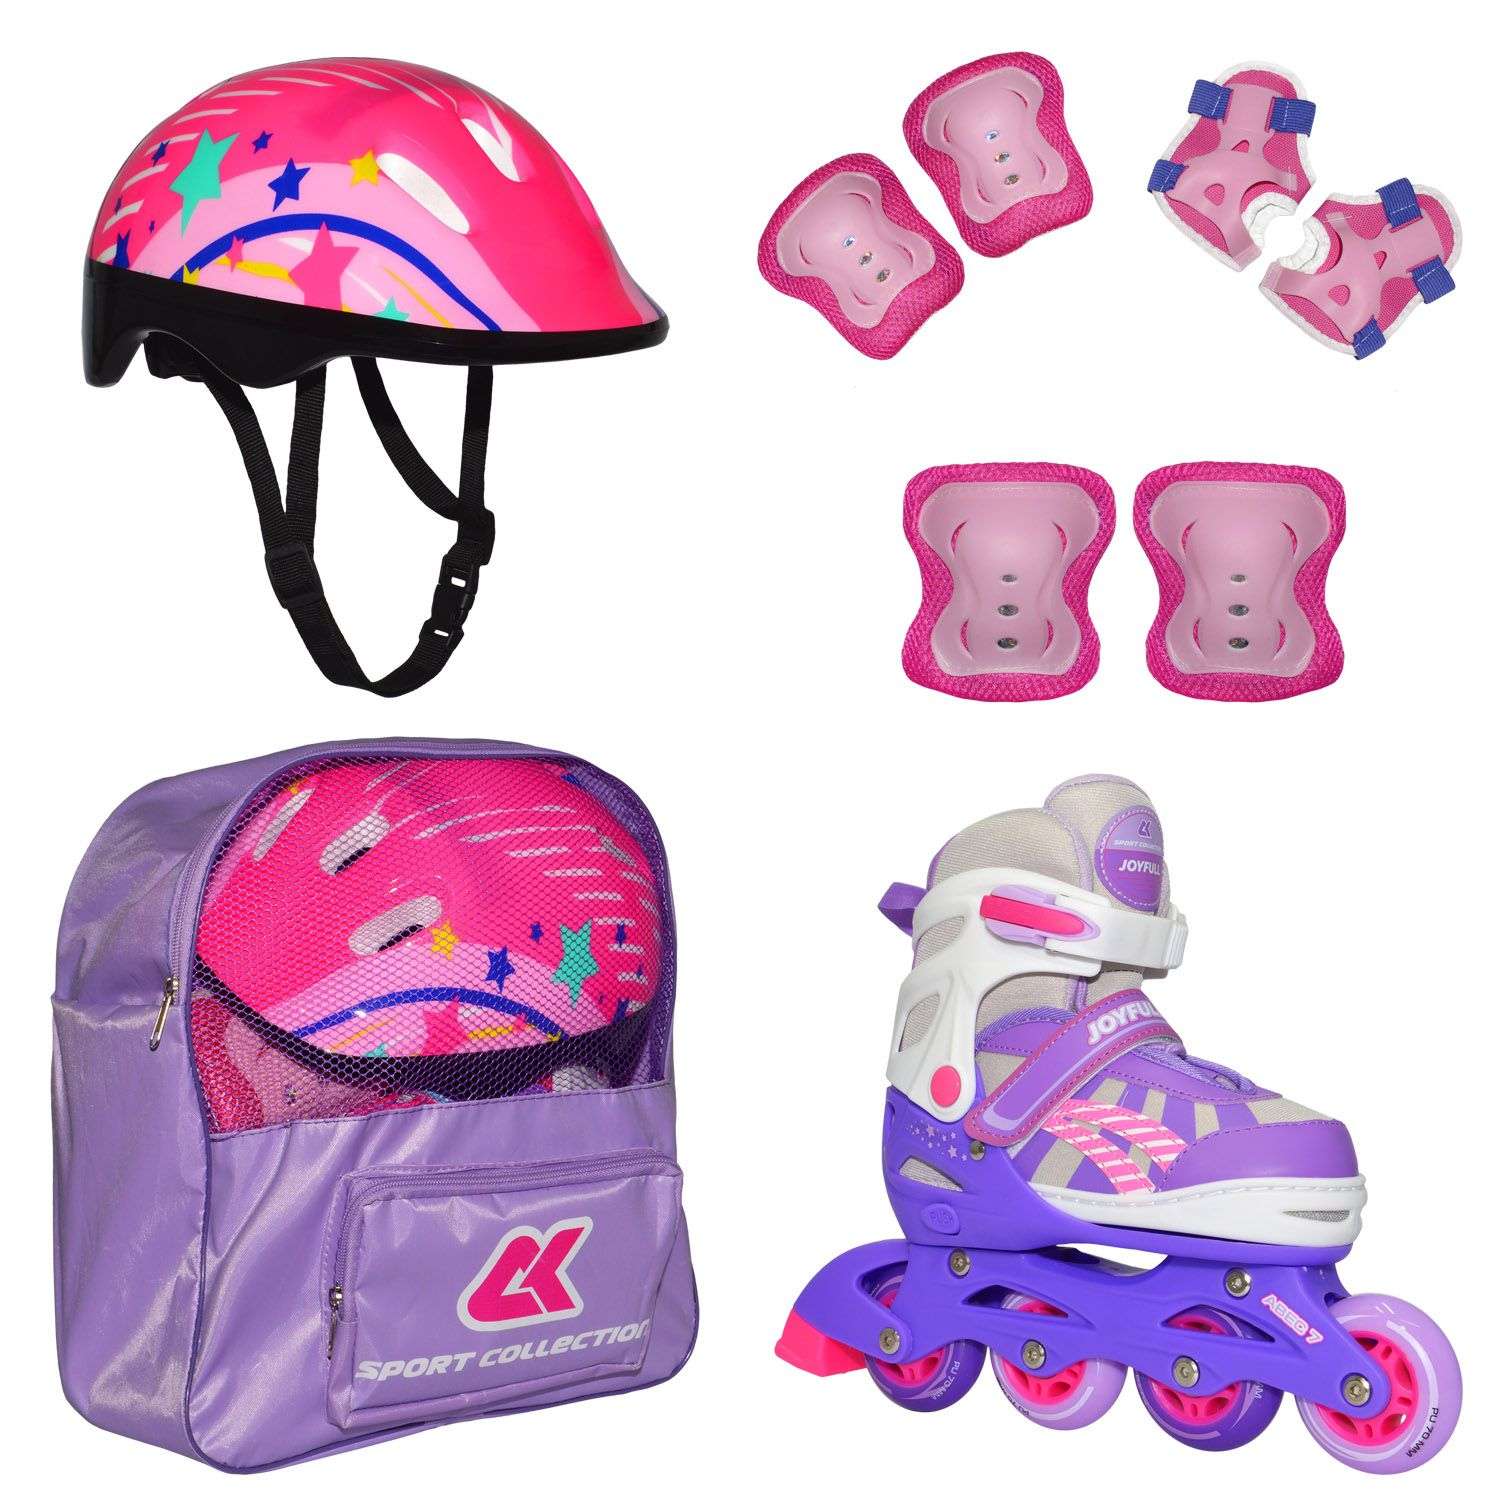 Роликовый комплект Sport Collection в сумке SET JOYFULL Violet ролики р. 33-36 Шлем 50-56 Защита S/M - фото 1